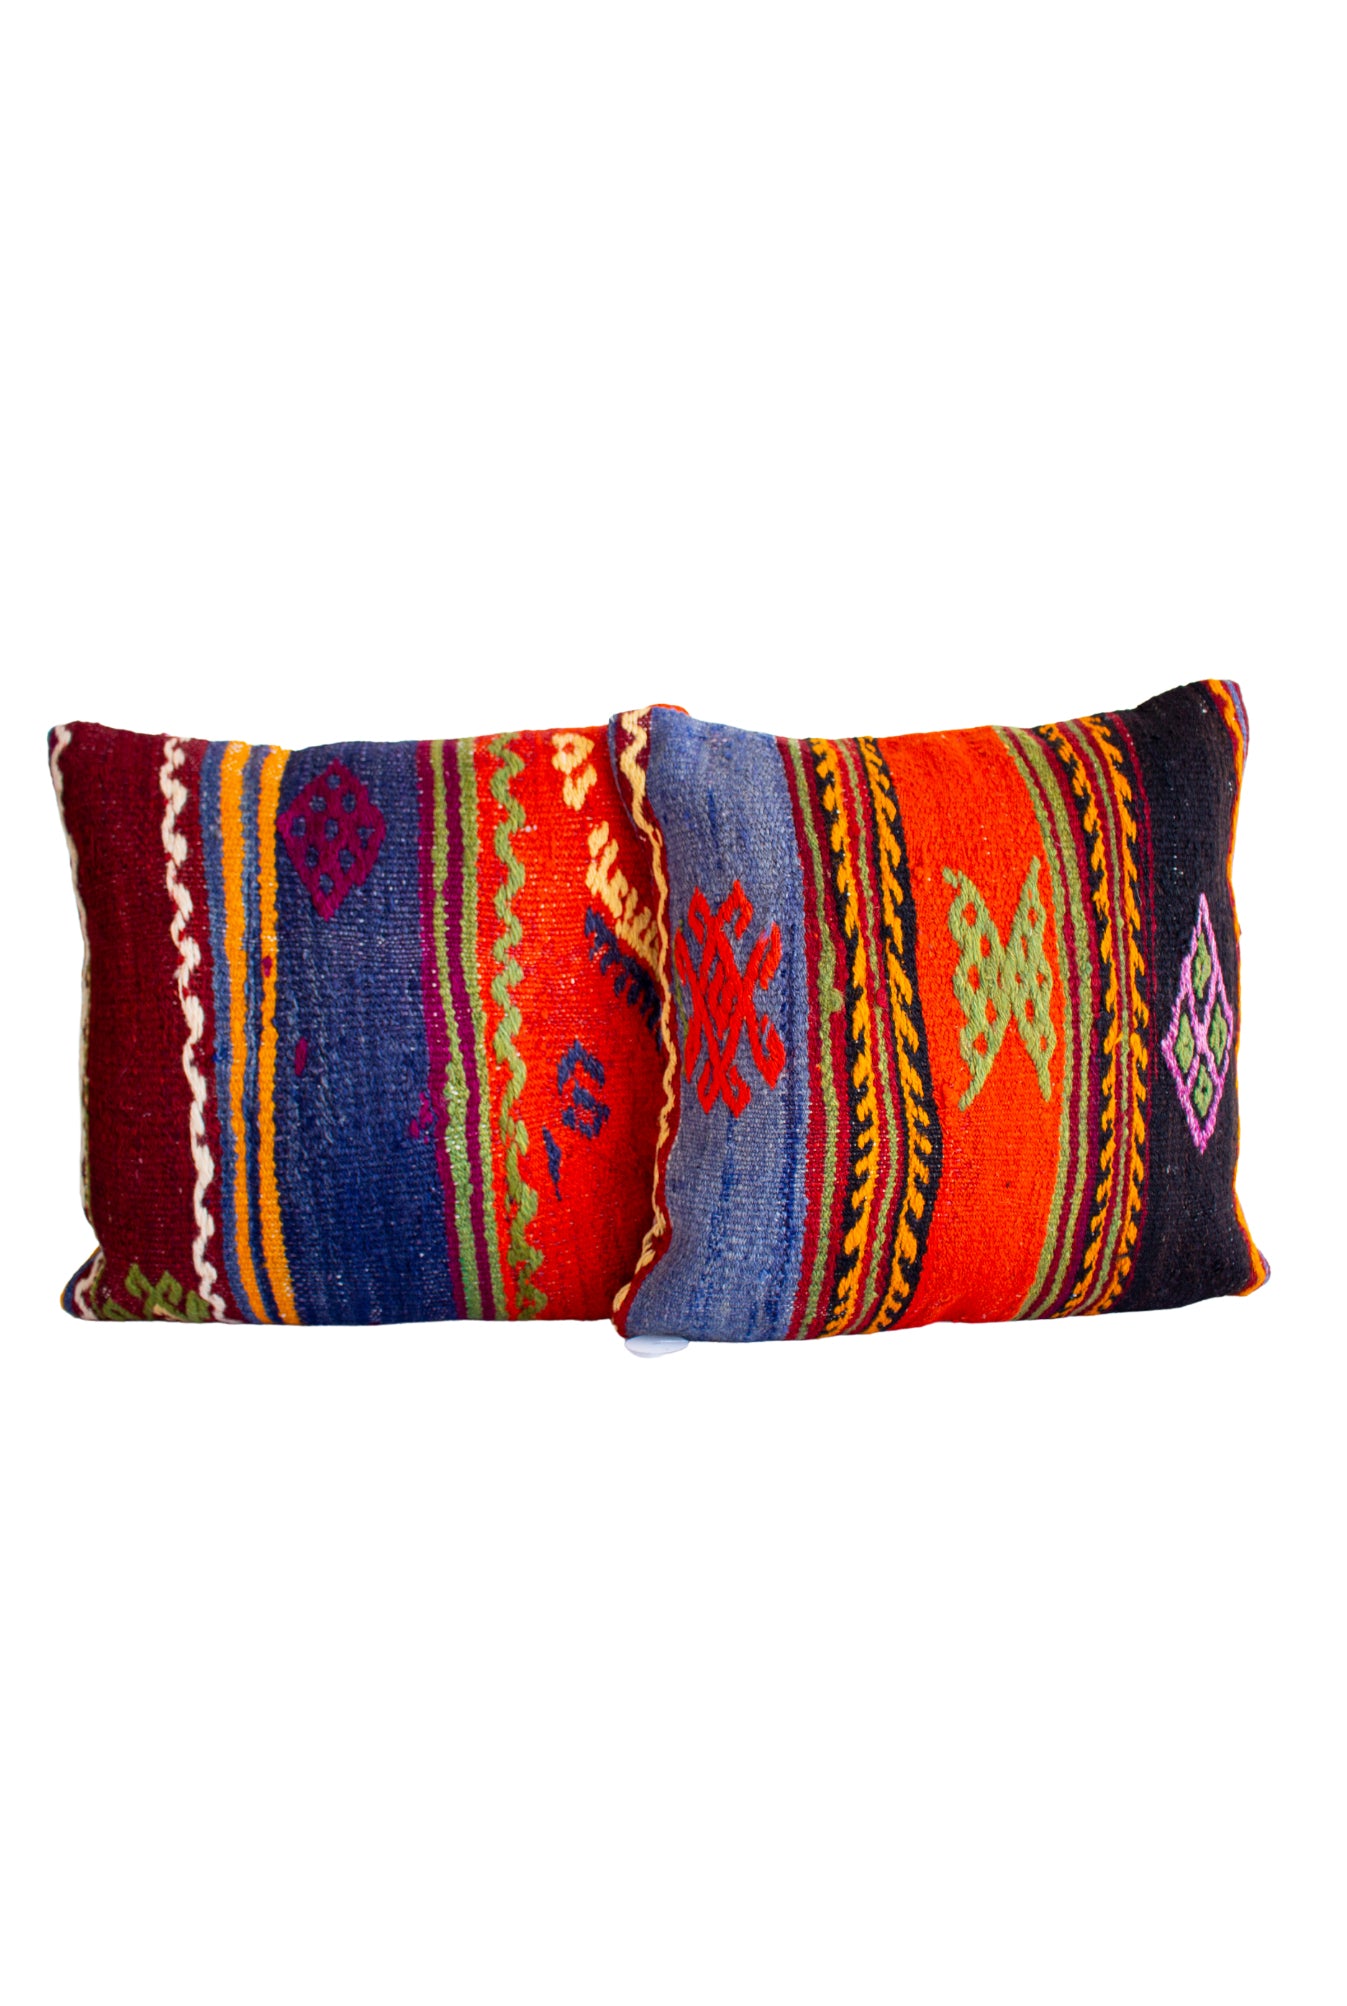 Izmir Vintage Kilim Pillows Set of 2